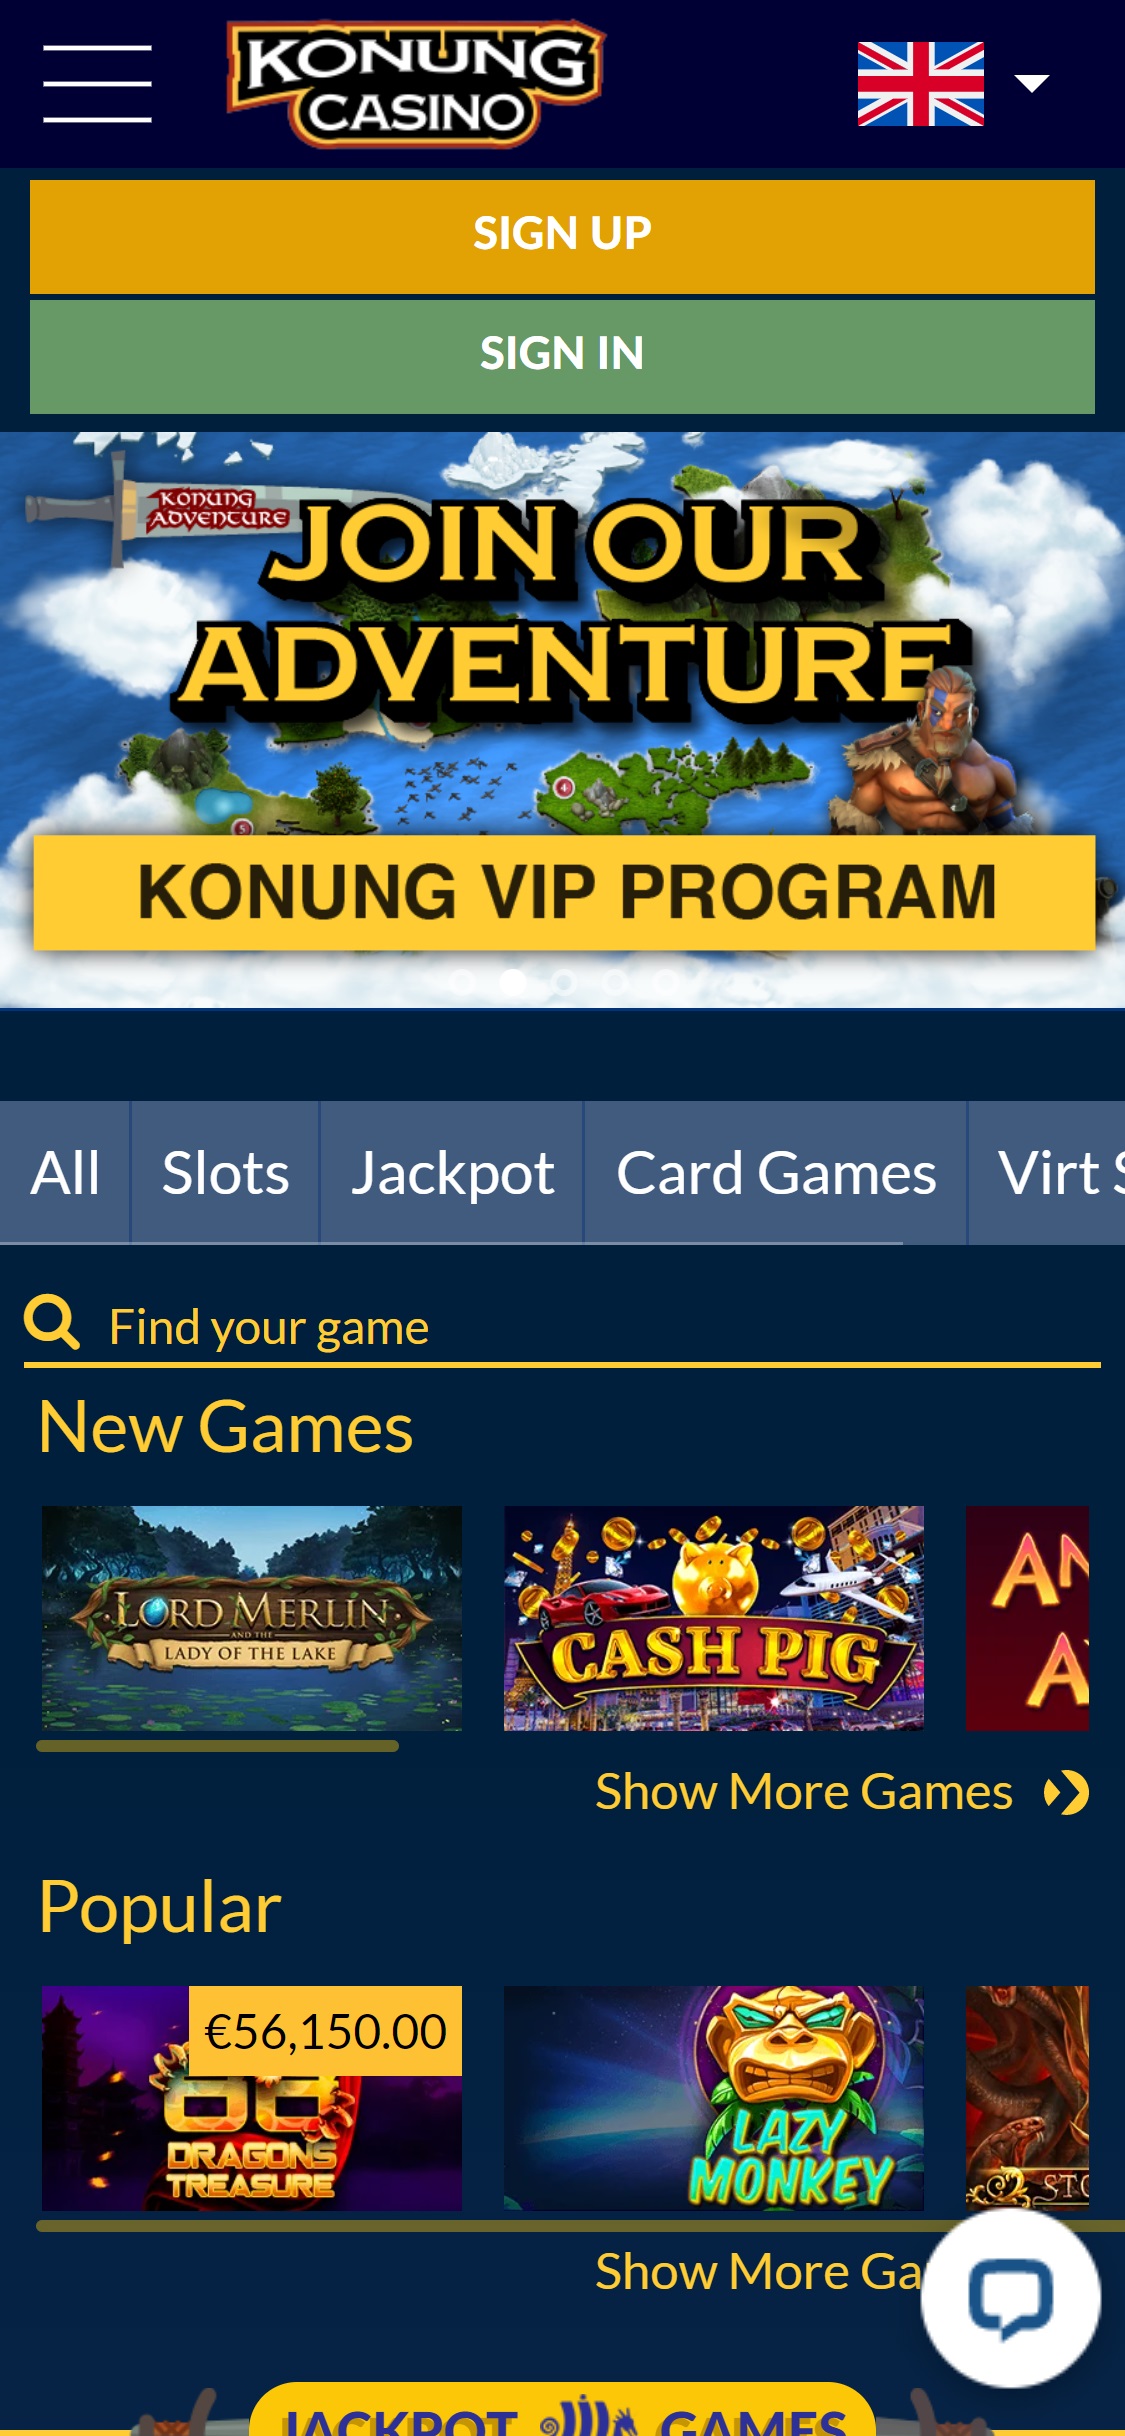 Konung Casino Mobile Review